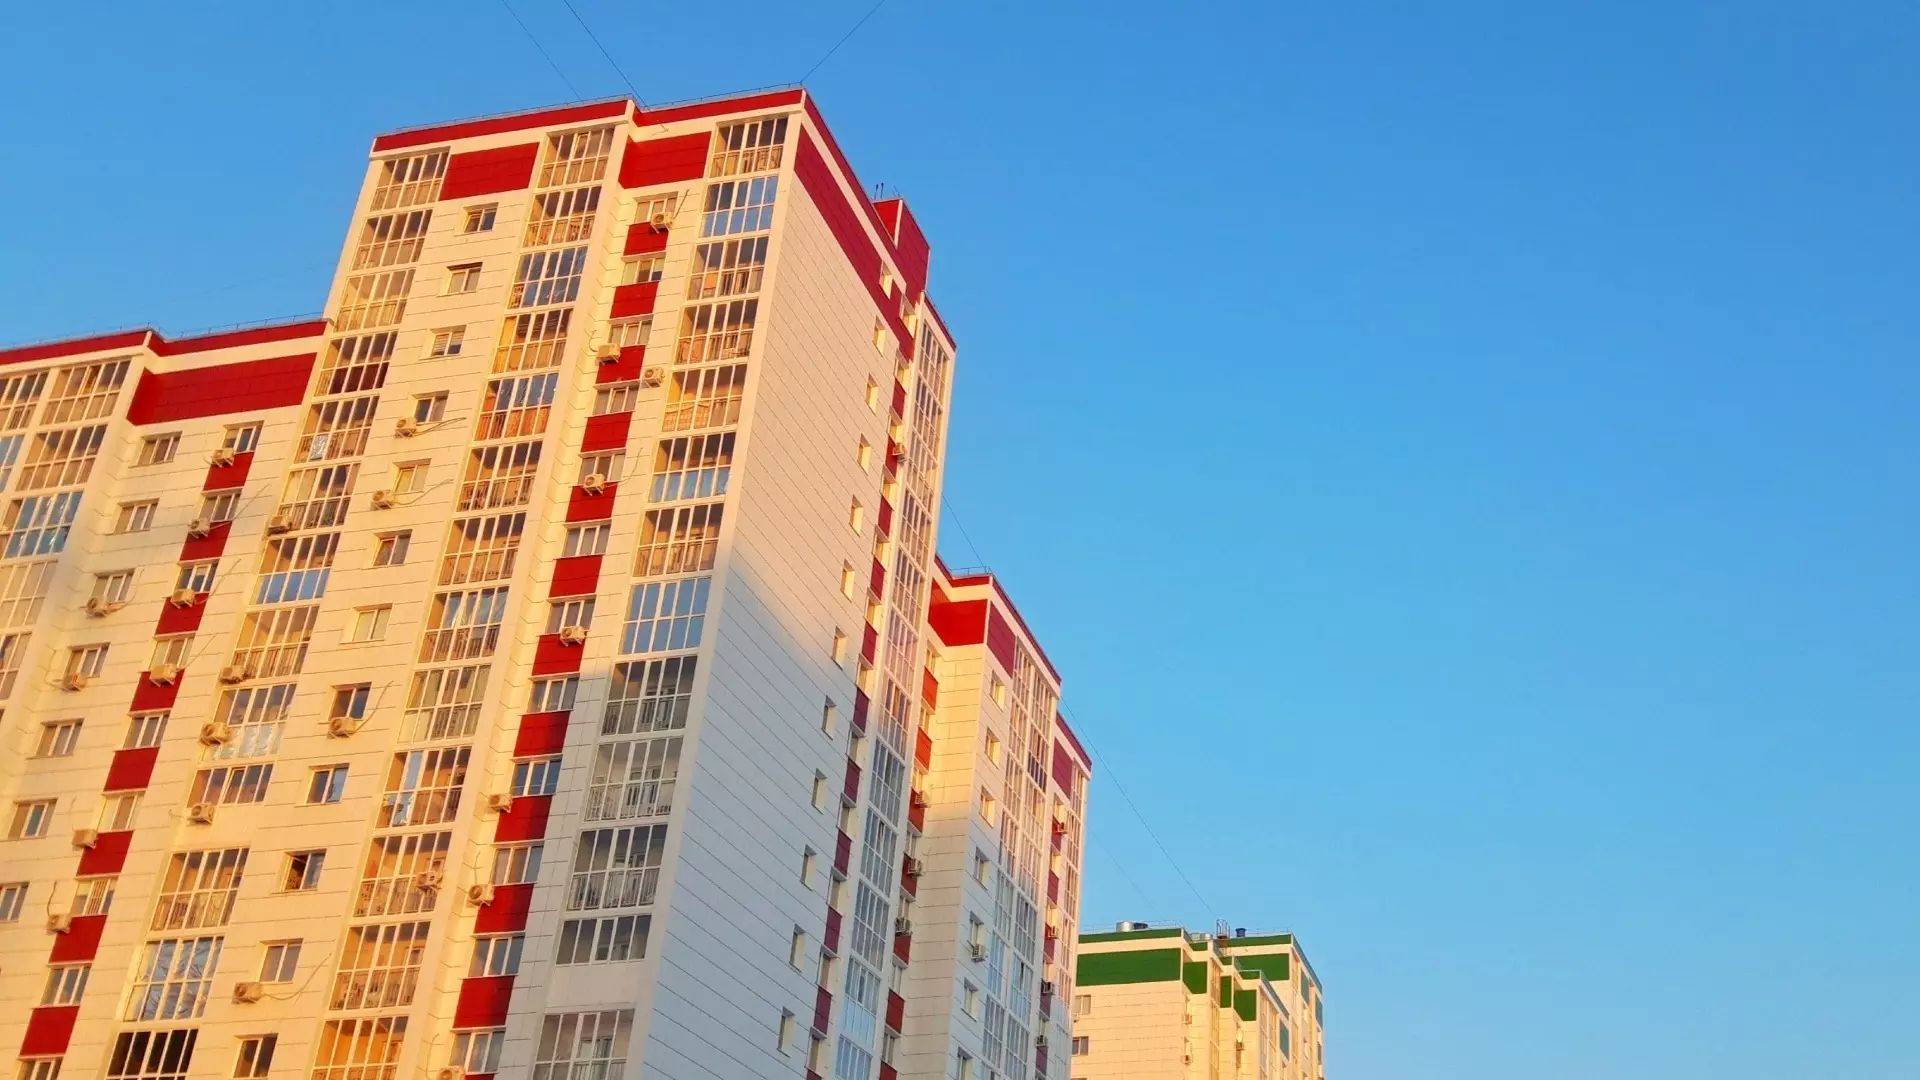 51,6% оренбургских семей могут позволить себе аренду жилья